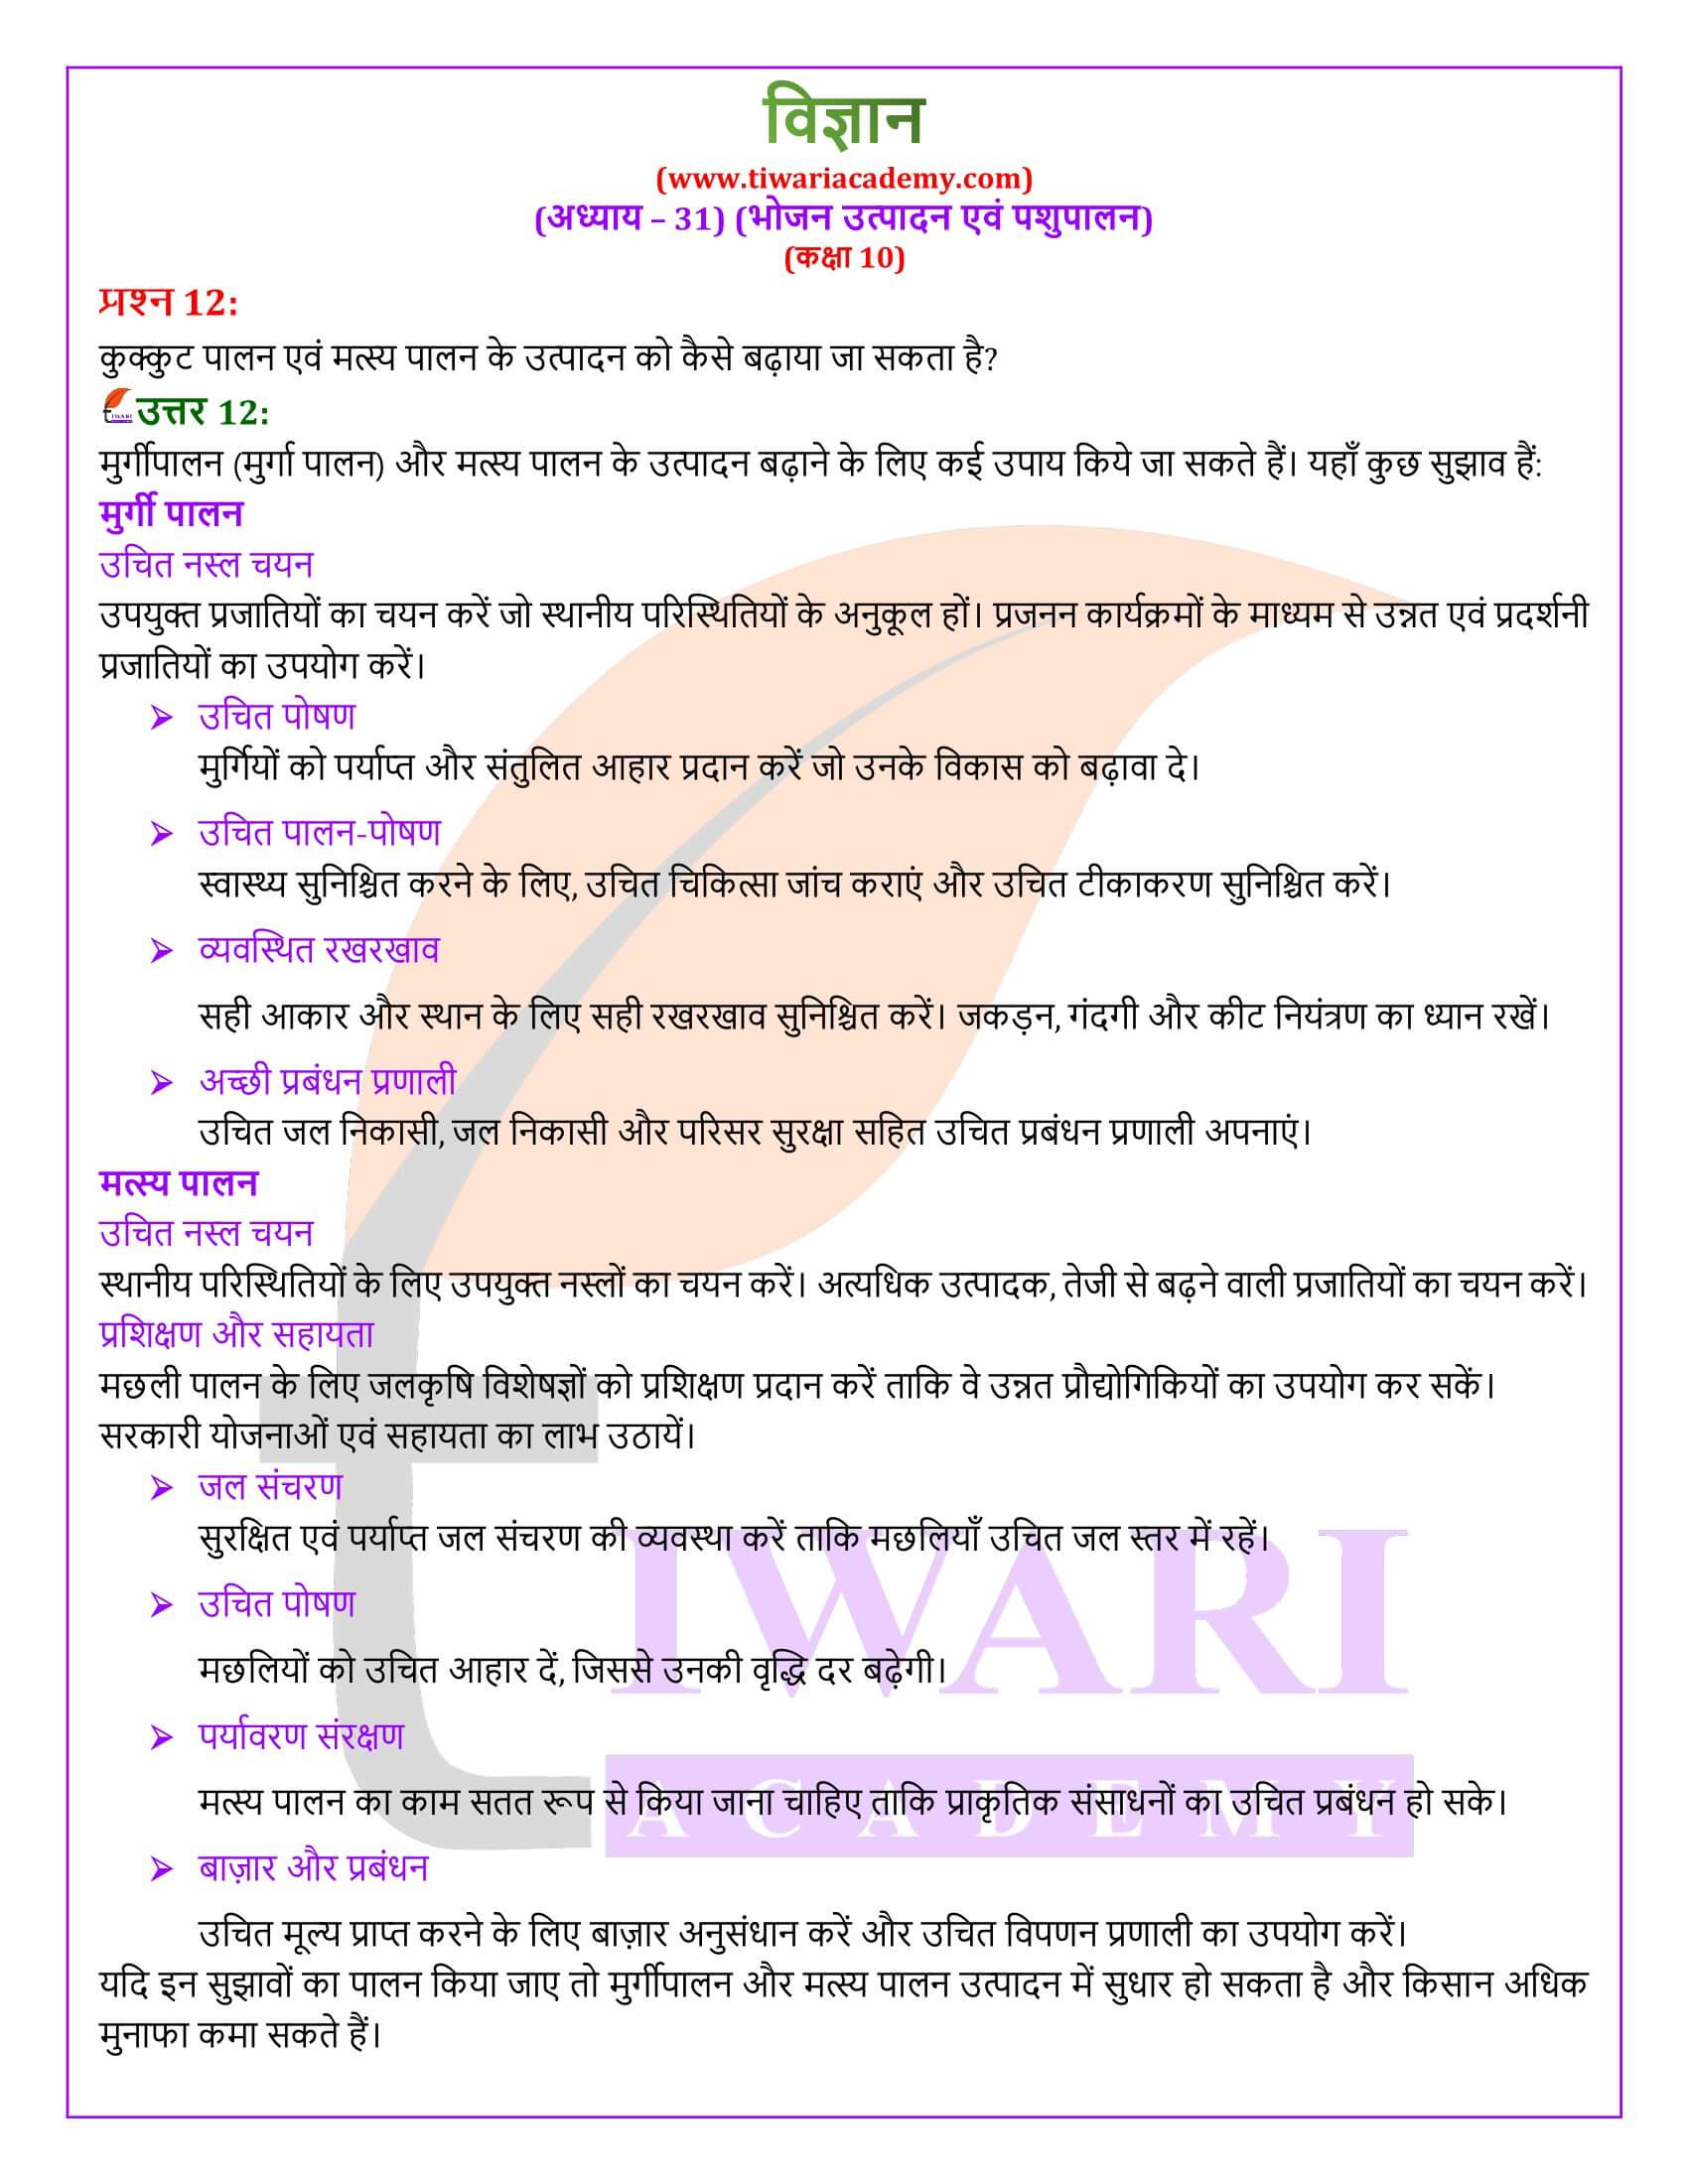 NIOS कक्षा 10 विज्ञान अध्याय 31 हिंदी में हल